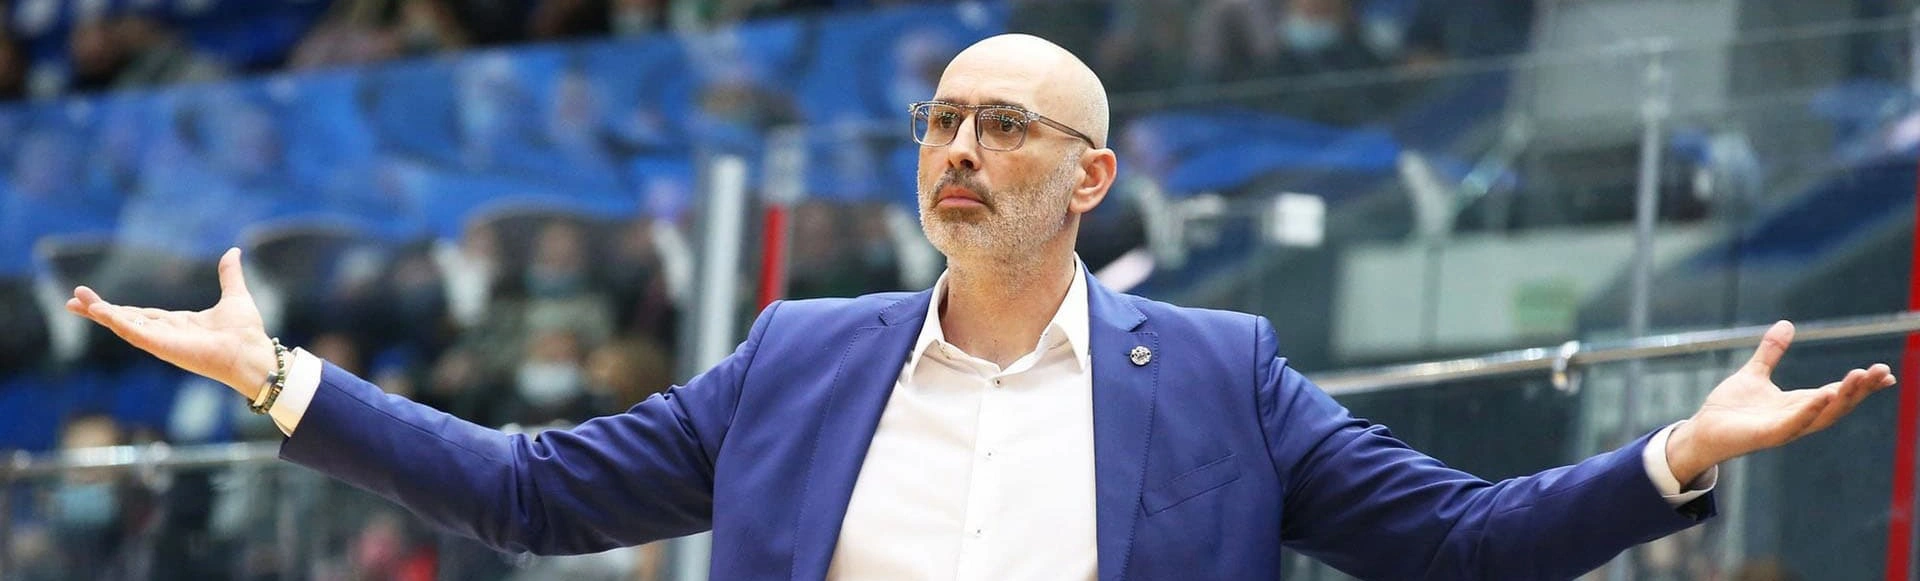 Зоран Лукич: «Уучастники нынешнего сбора это будущее российского баскетбола»